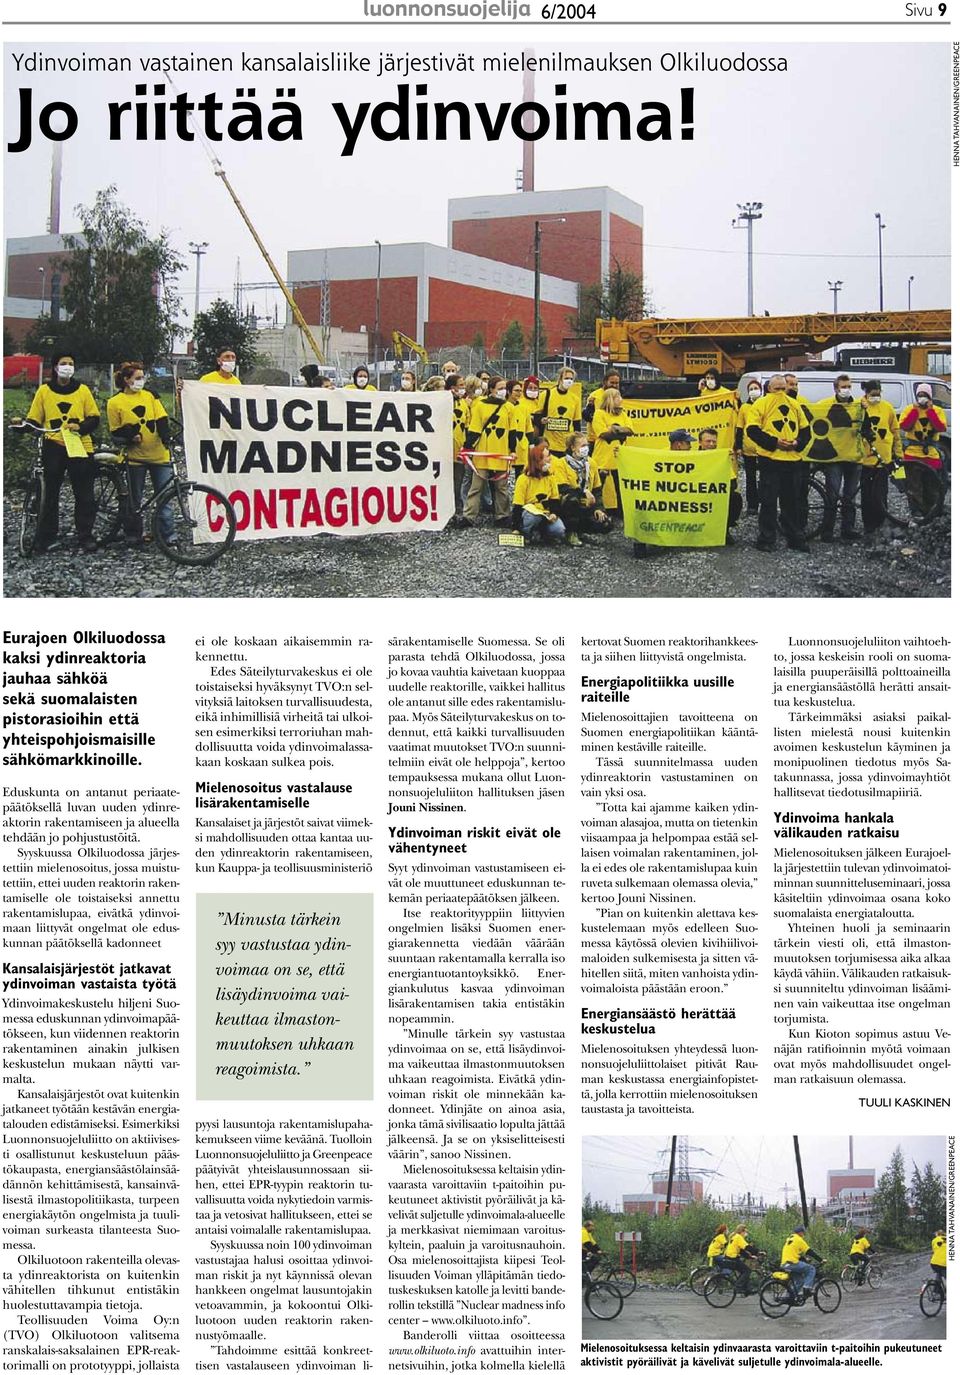 Eduskunta on antanut periaatepäätöksellä luvan uuden ydinreaktorin rakentamiseen ja alueella tehdään jo pohjustustöitä.